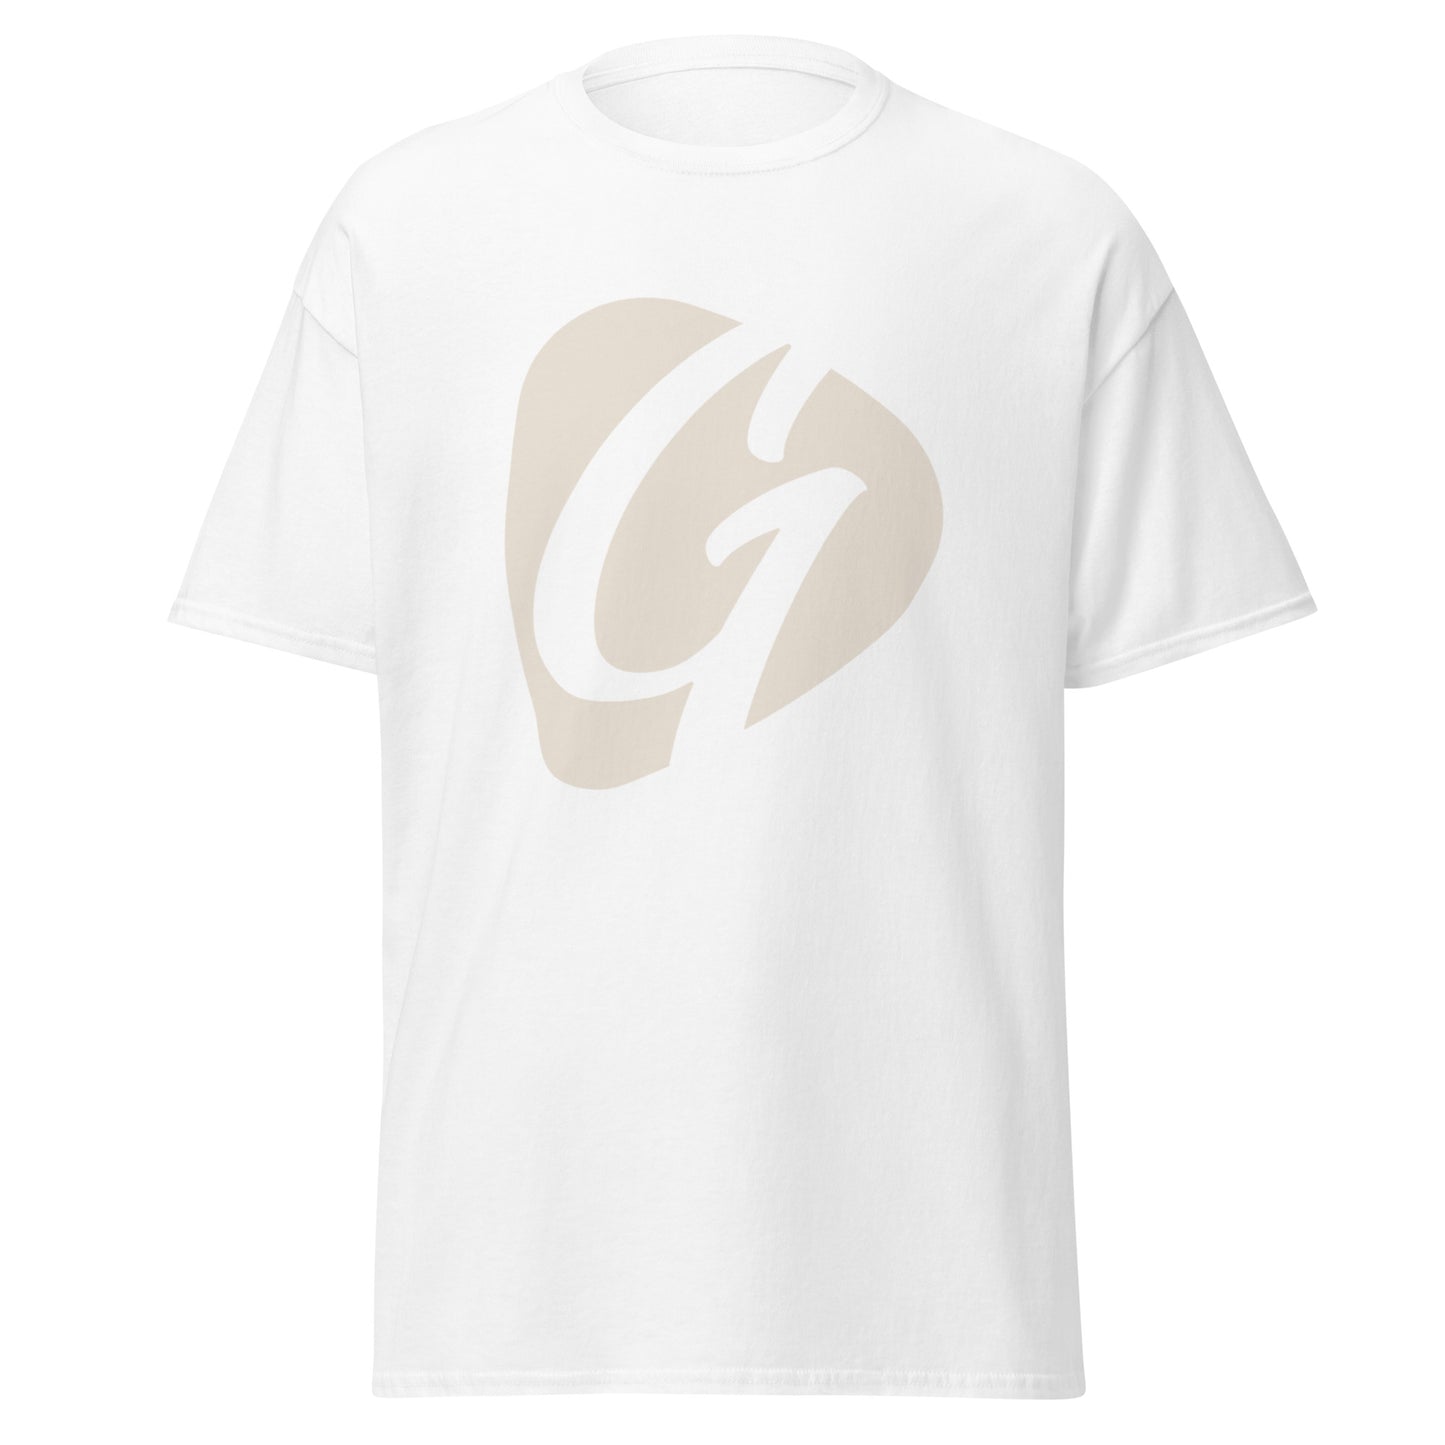 Gatekeeper G Logo Shirt